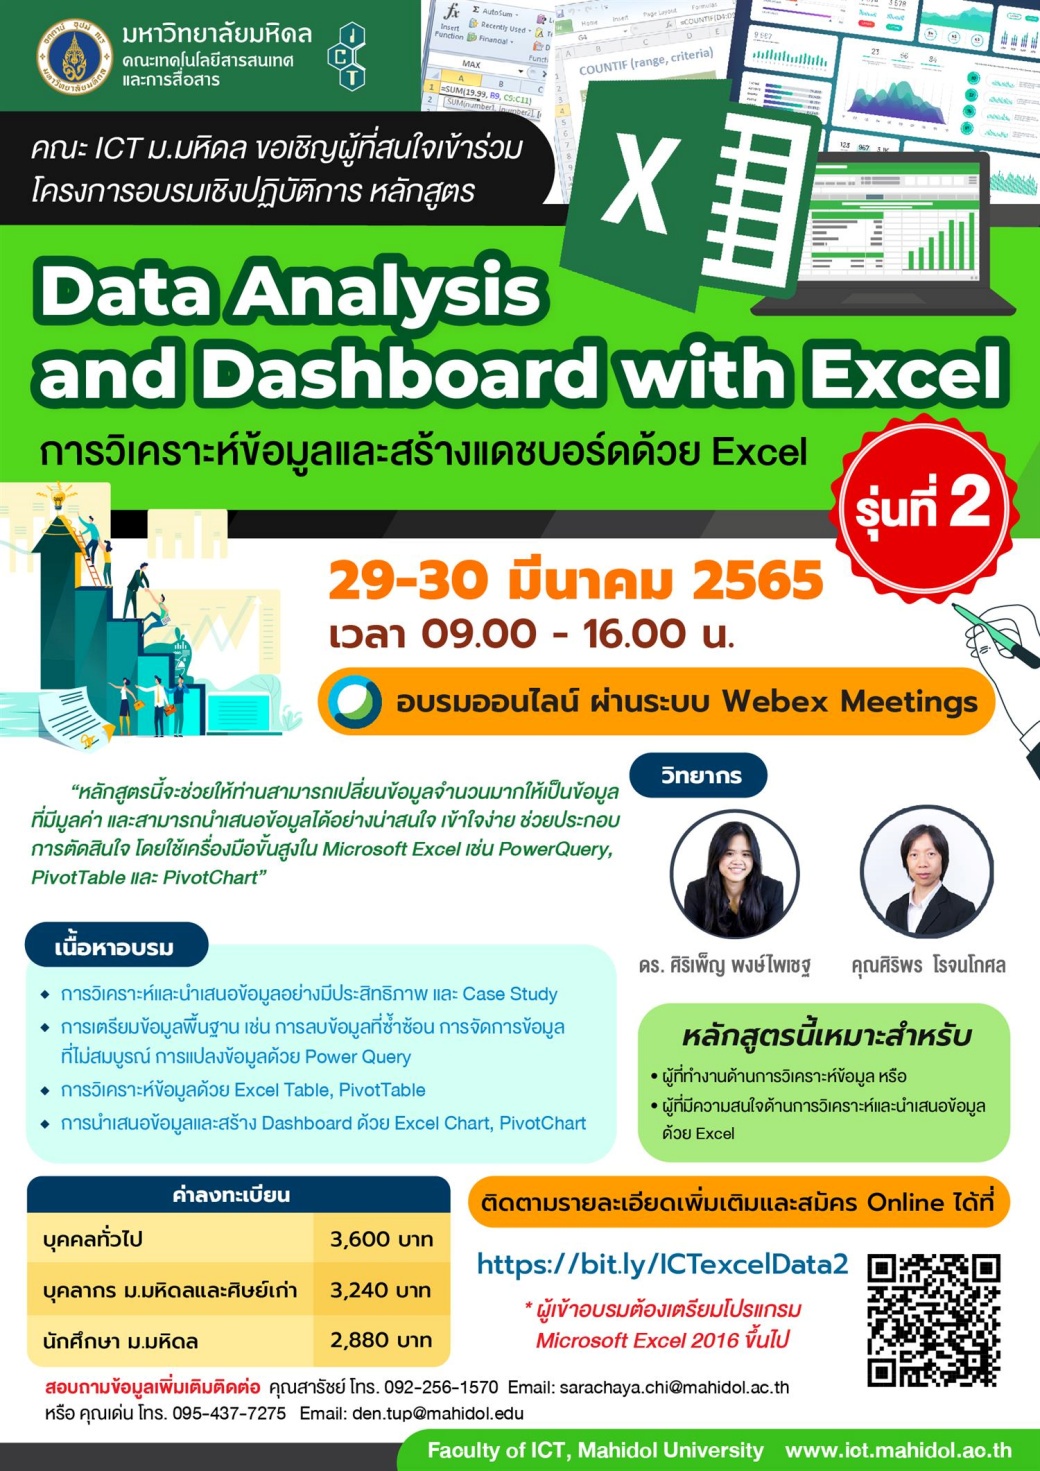 คณะ ICT มหิดล ขอเชิญเข้าร่วมอบรมเชิงปฏิบัติการ หลักสูตร Data Analysis and Dashboard with Excel : การวิเคราะห์ข้อมูลและสร้างแดชบอร์ดด้วย Excel รุ่นที่ 2 (Online)